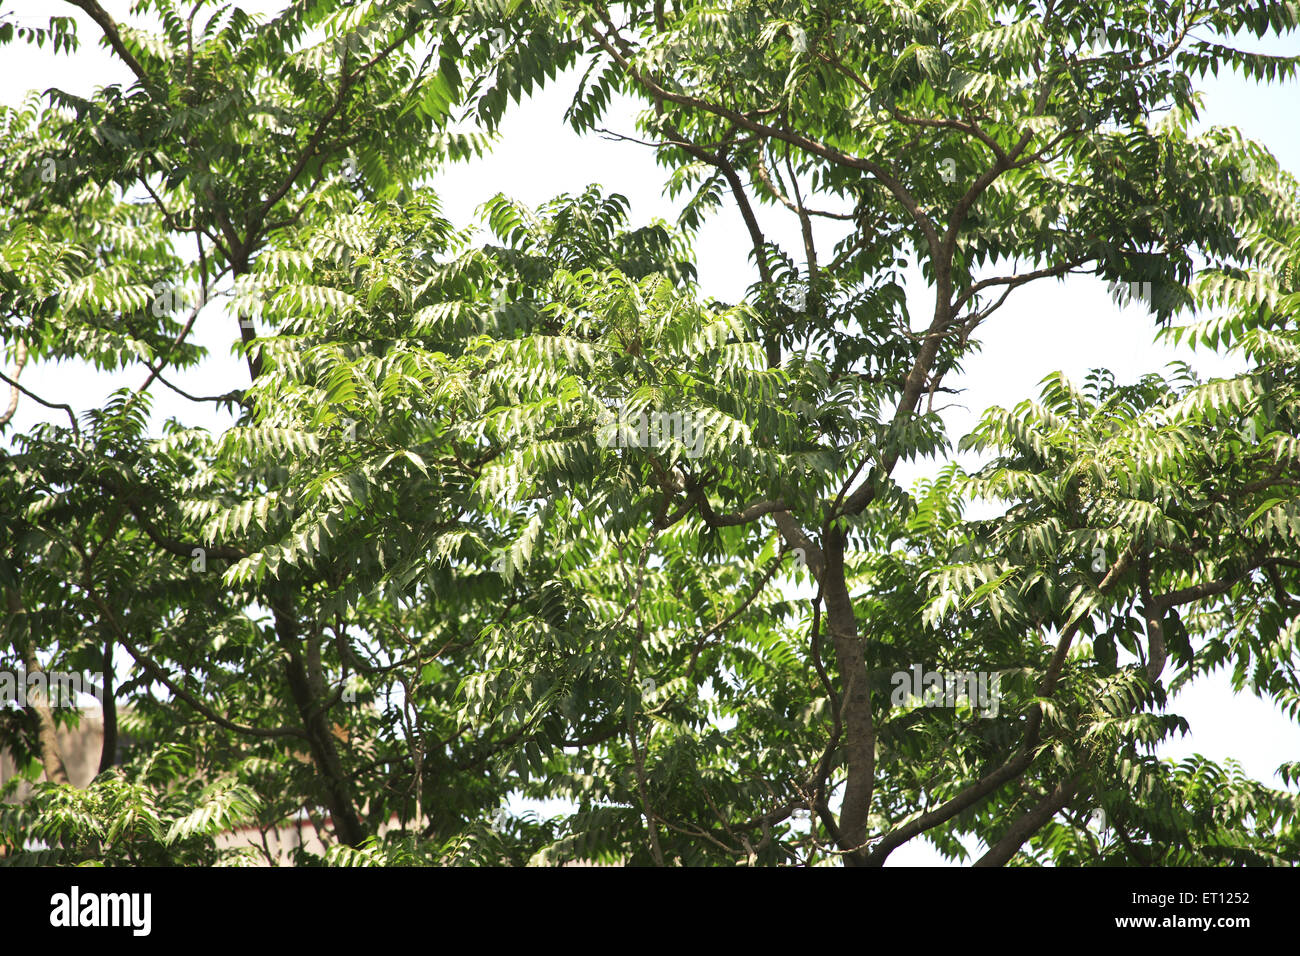 Las hojas verdes de neem o margosa Azadirachta indica 2 de junio de 2009 Foto de stock